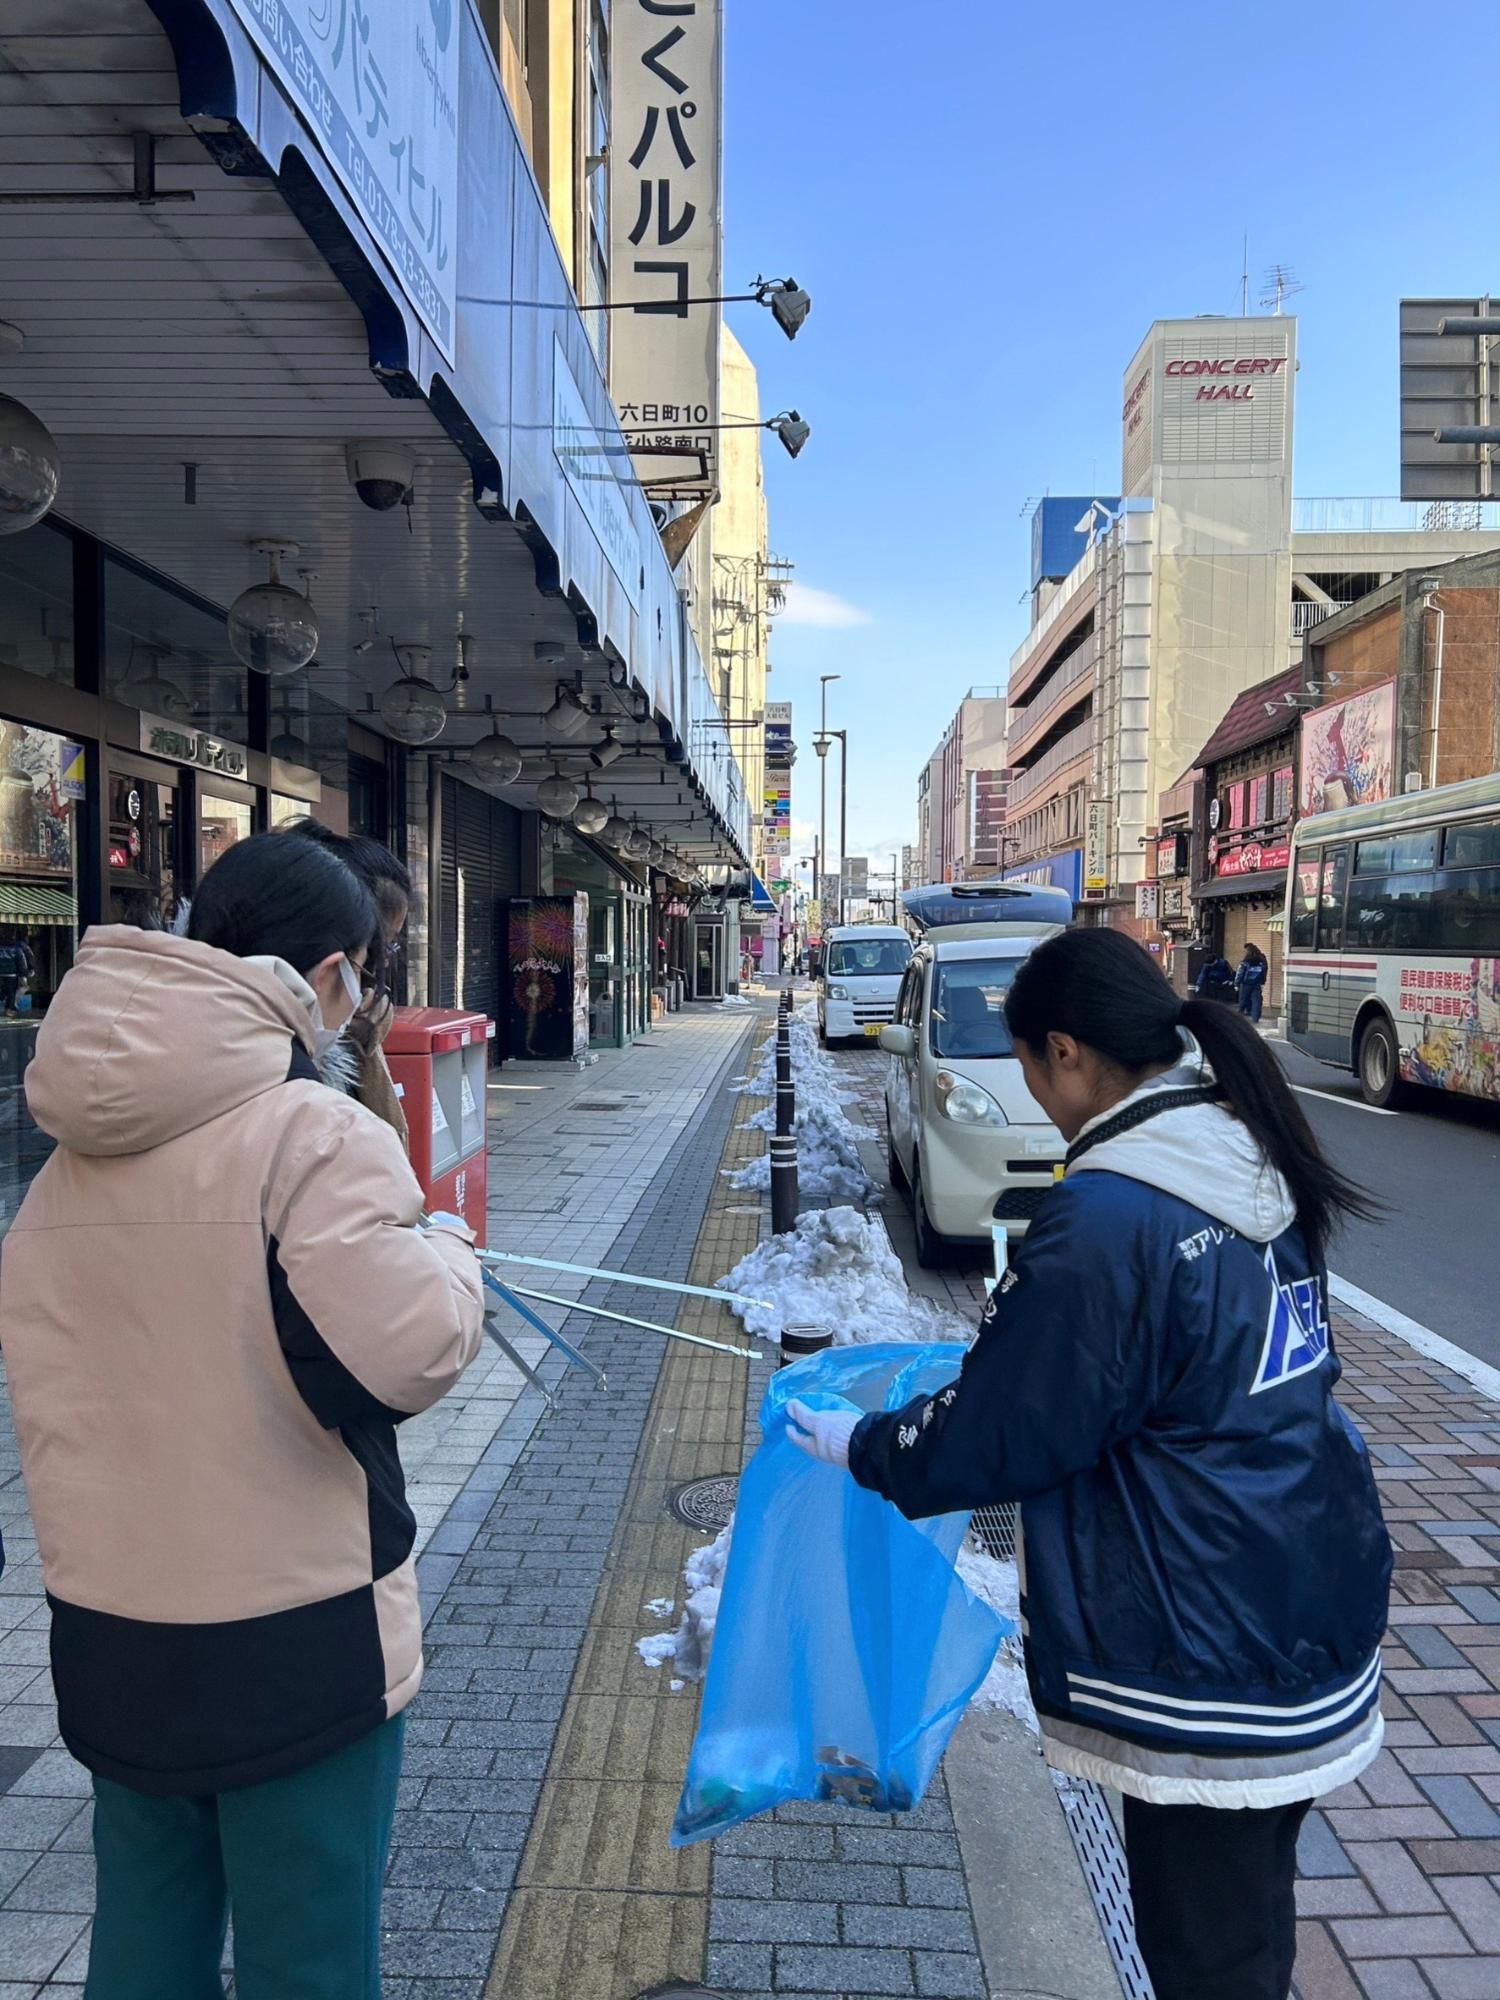 六日町の歩道のごみを女性二人でトングで掴んでごみ袋に入れている写真。